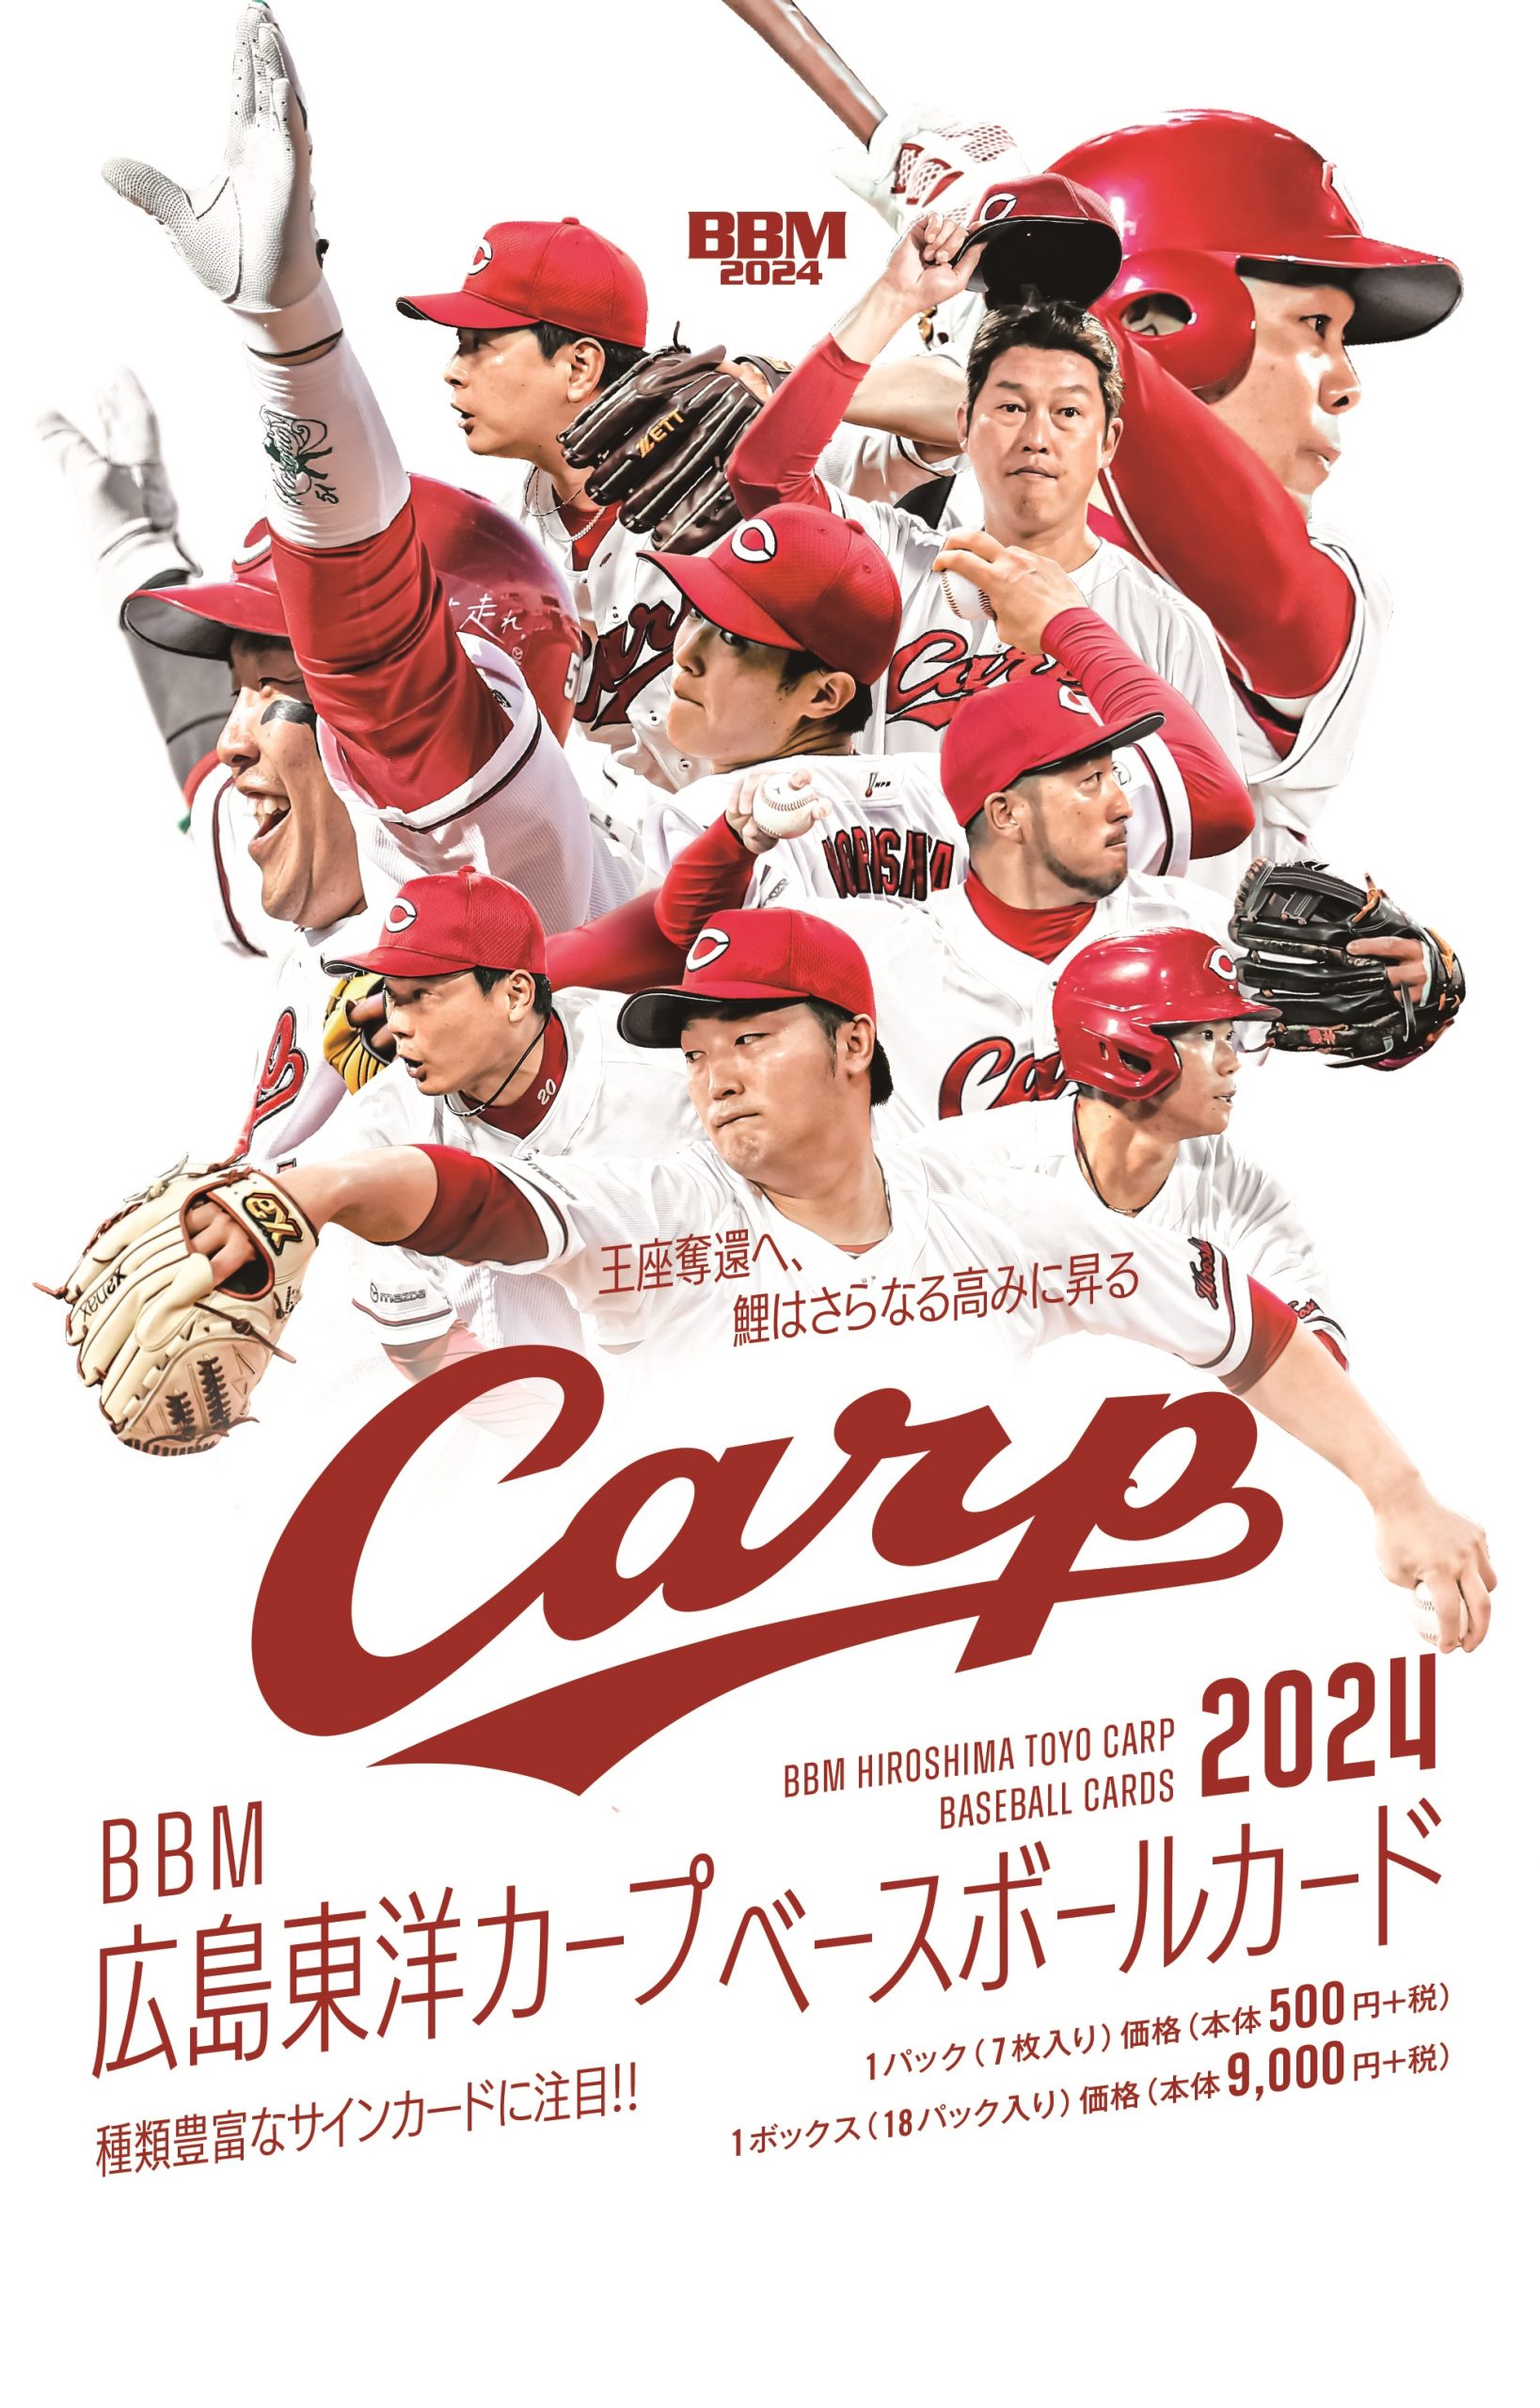 ⚾ BBM 広島東洋カープ ベースボールカード 2024【製品情報】 | Trading Card Journal